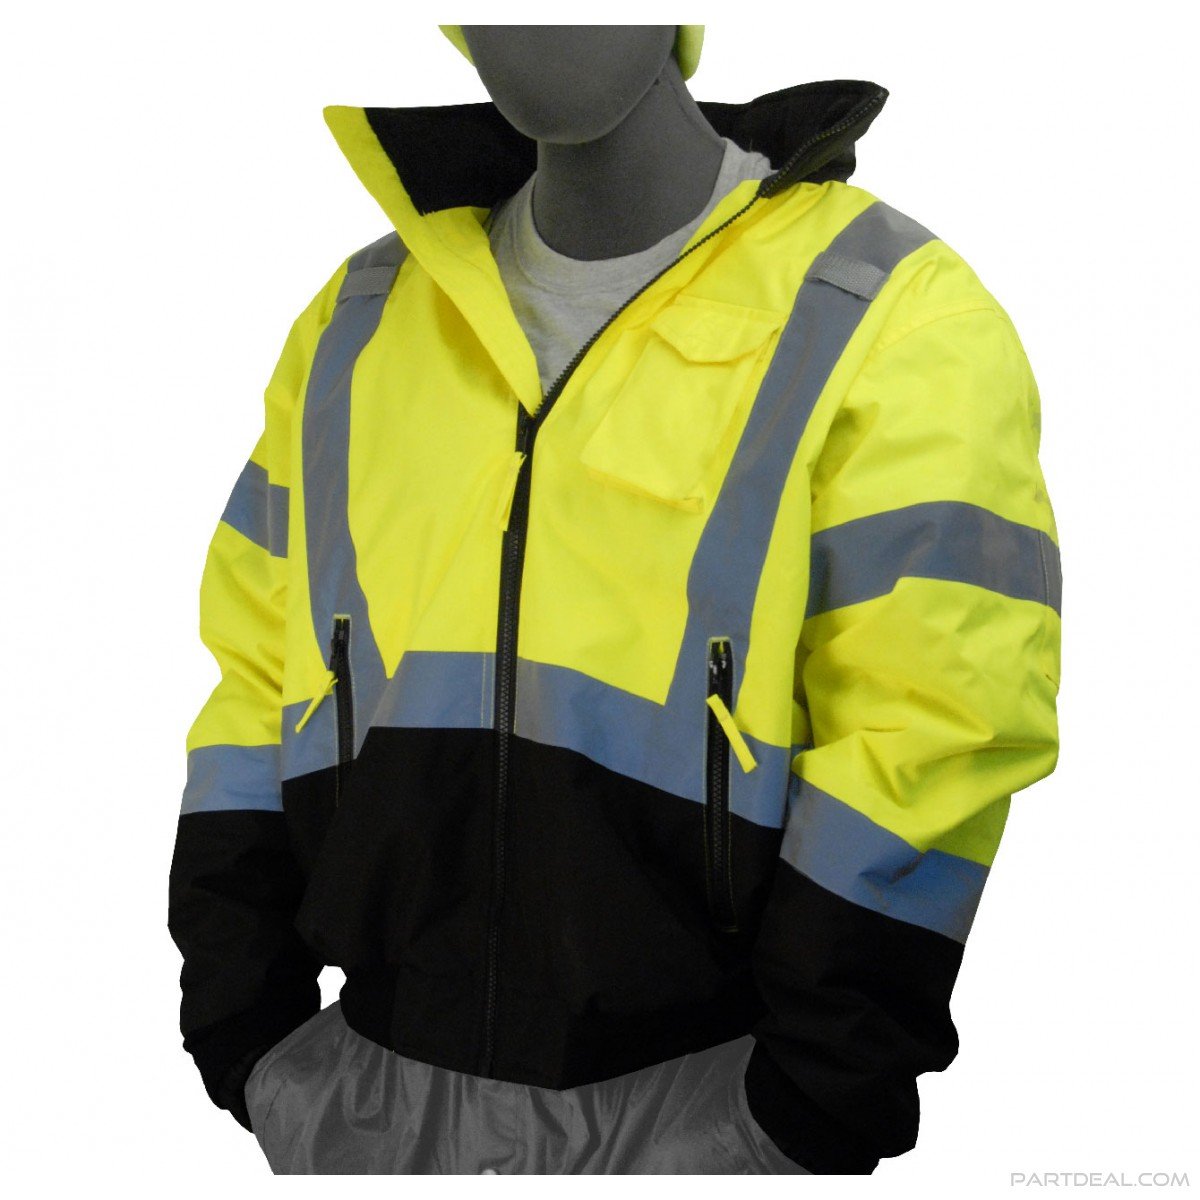 Majestic Men's C3 Waterproof Lined Jacket - Work World - Workwear, Work Boots, Safety Gear